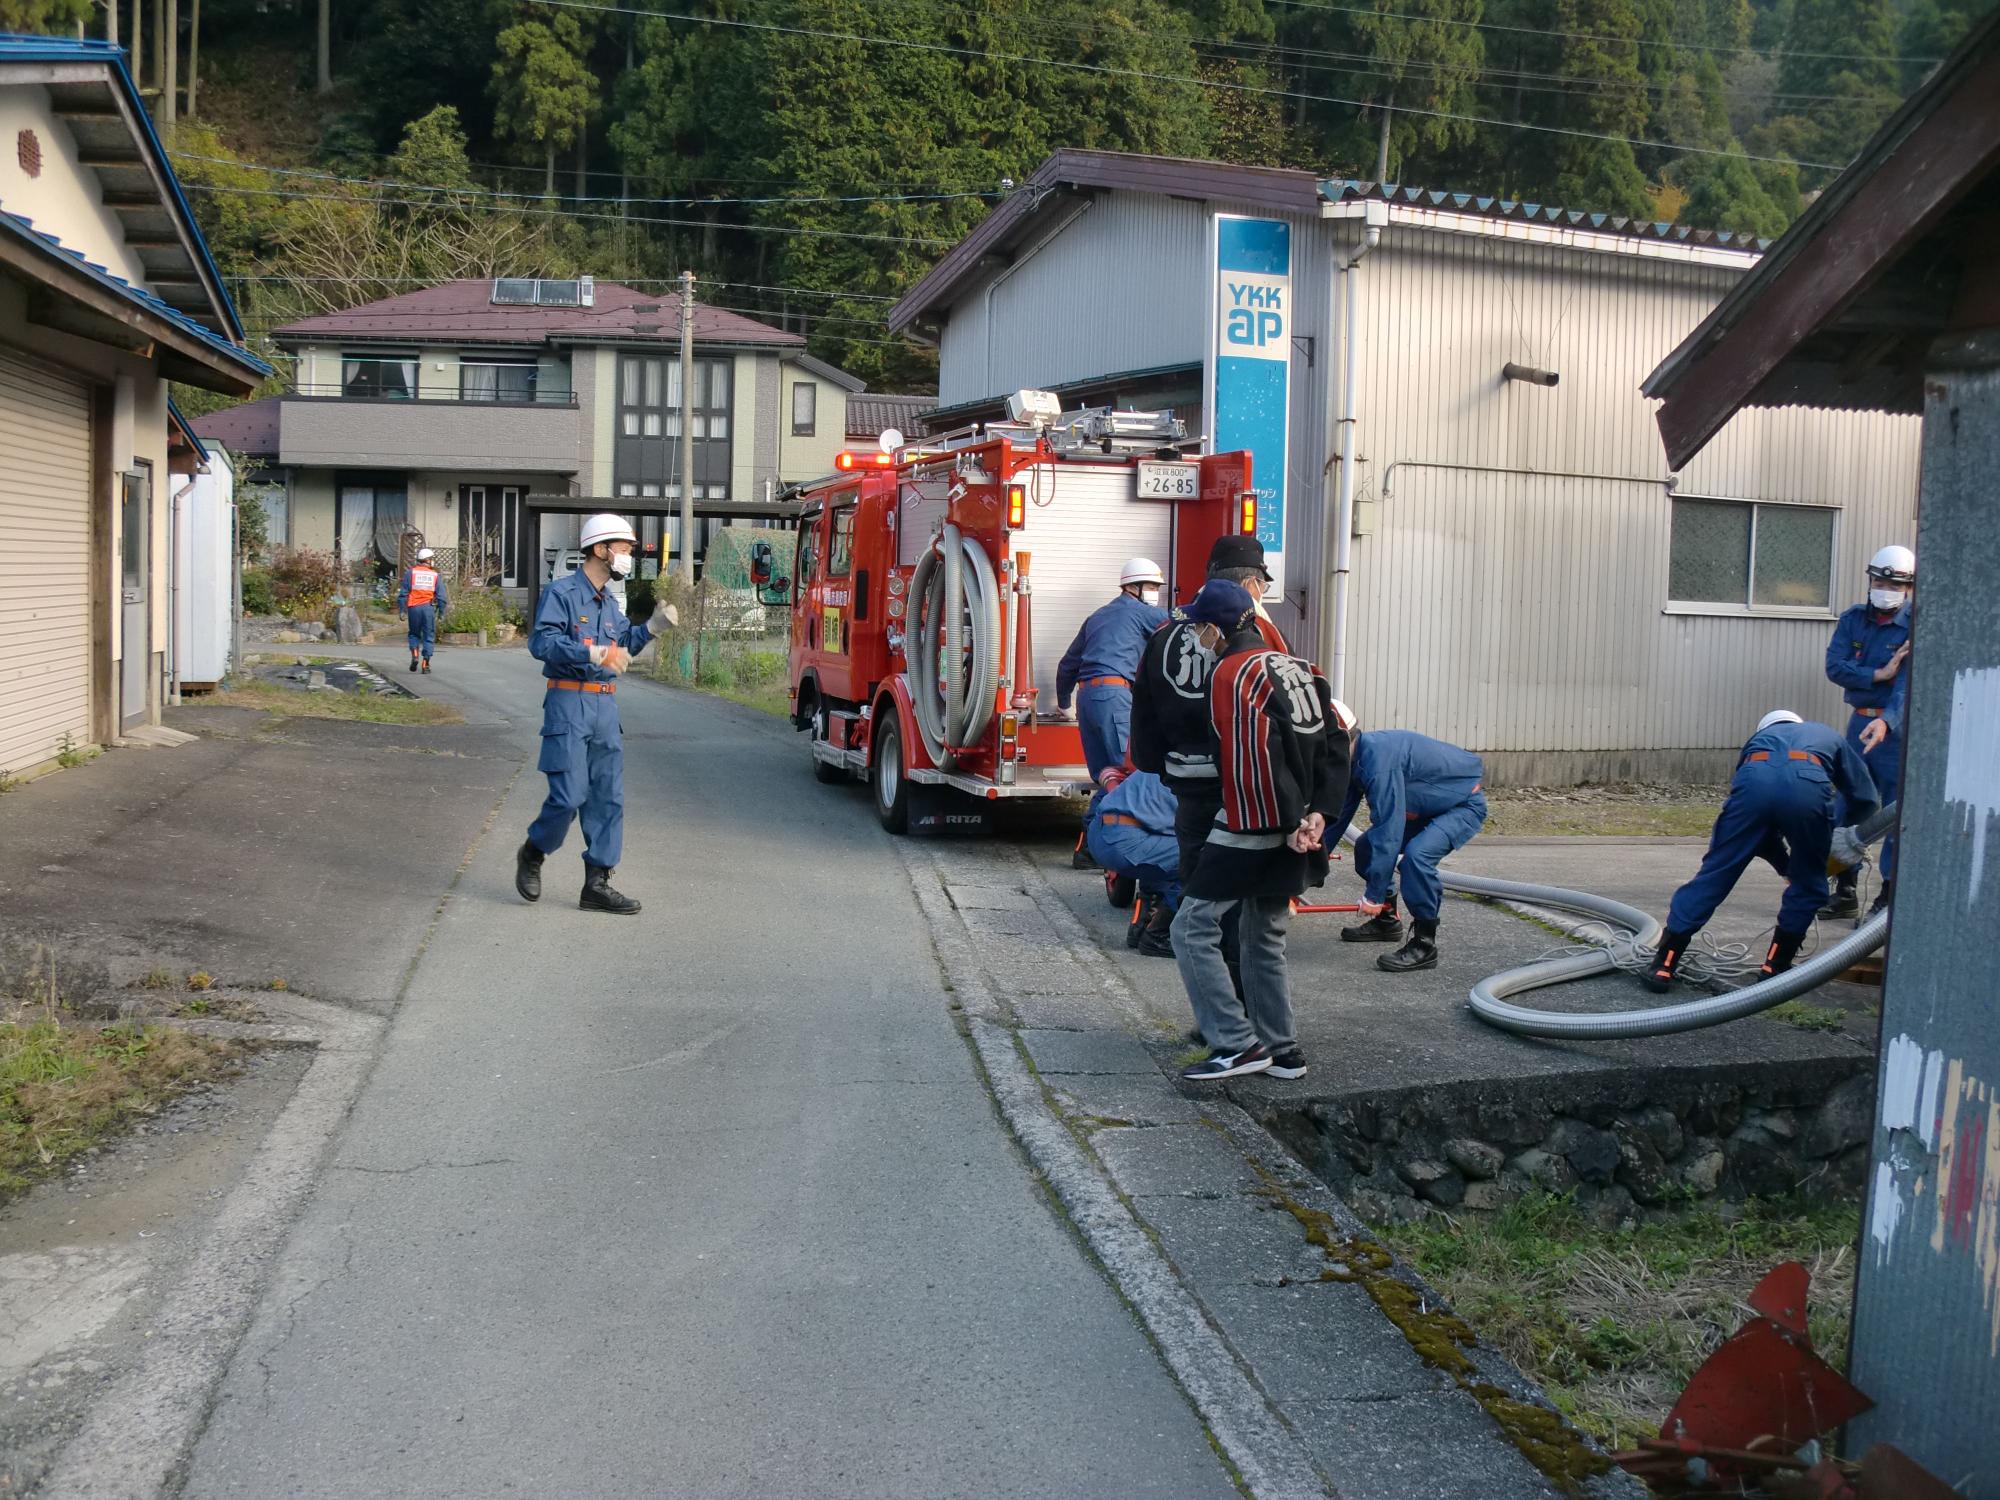 細い路地の端に消防車を停車させ消防団員がホースを持っている訓練の様子の写真